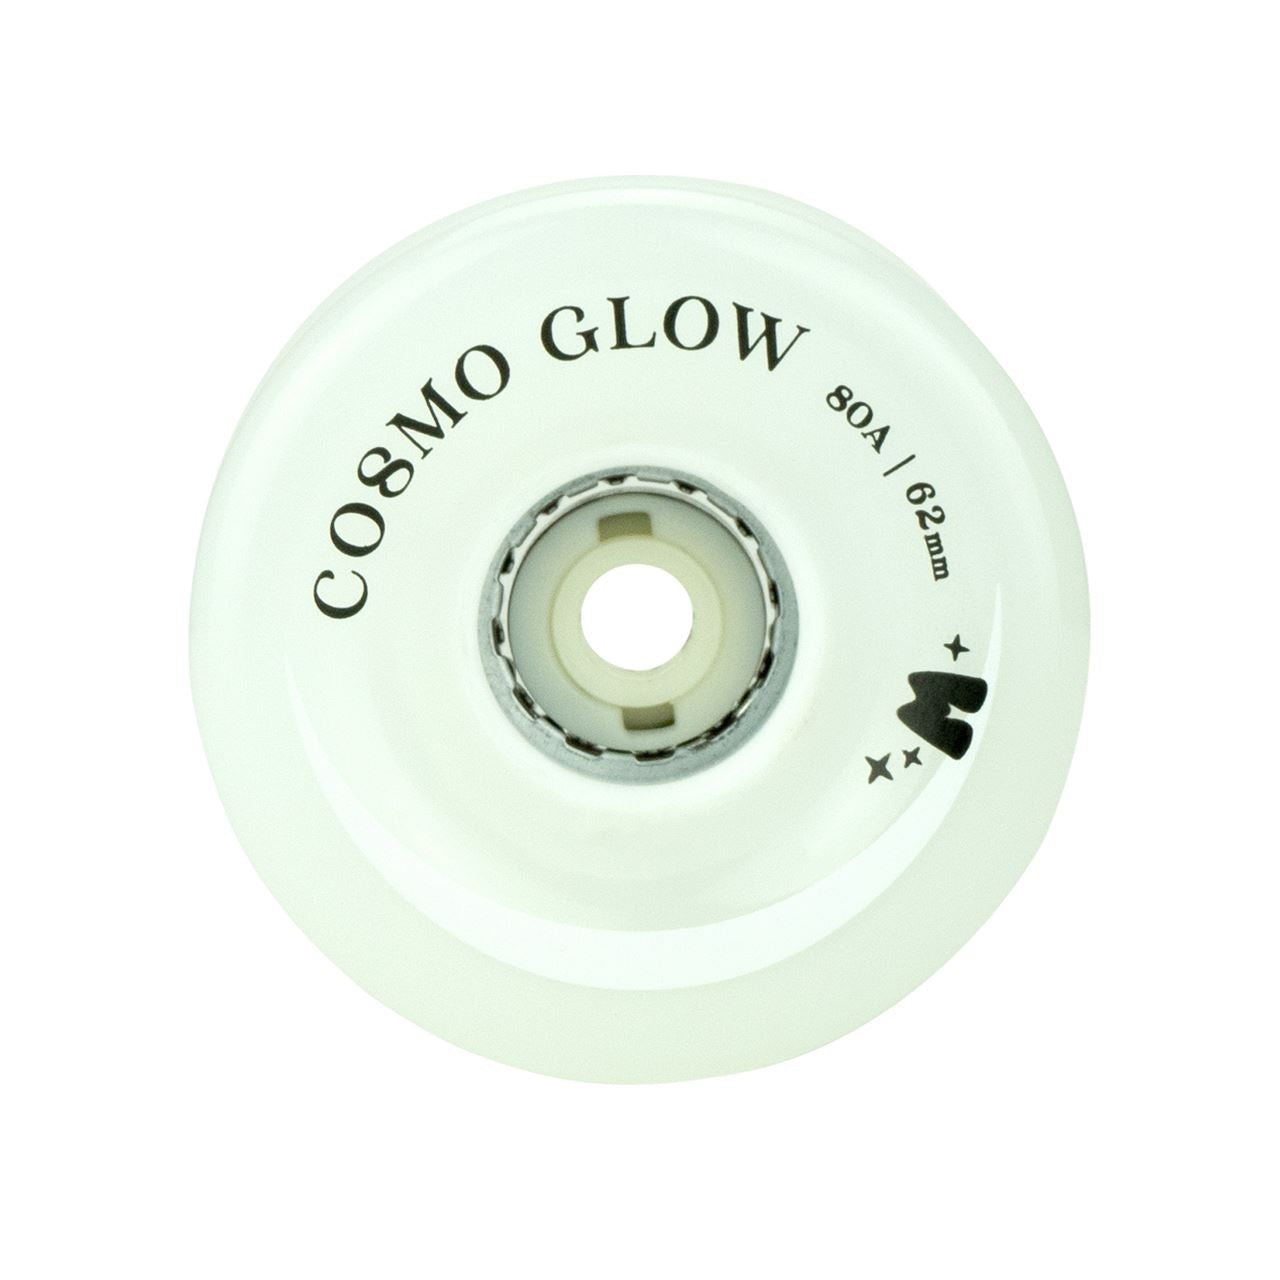 Moxi Cosmo Glow - Ruedas para patines con luz LED, color blanco, 2.441 in, 80 A, 4 unidades